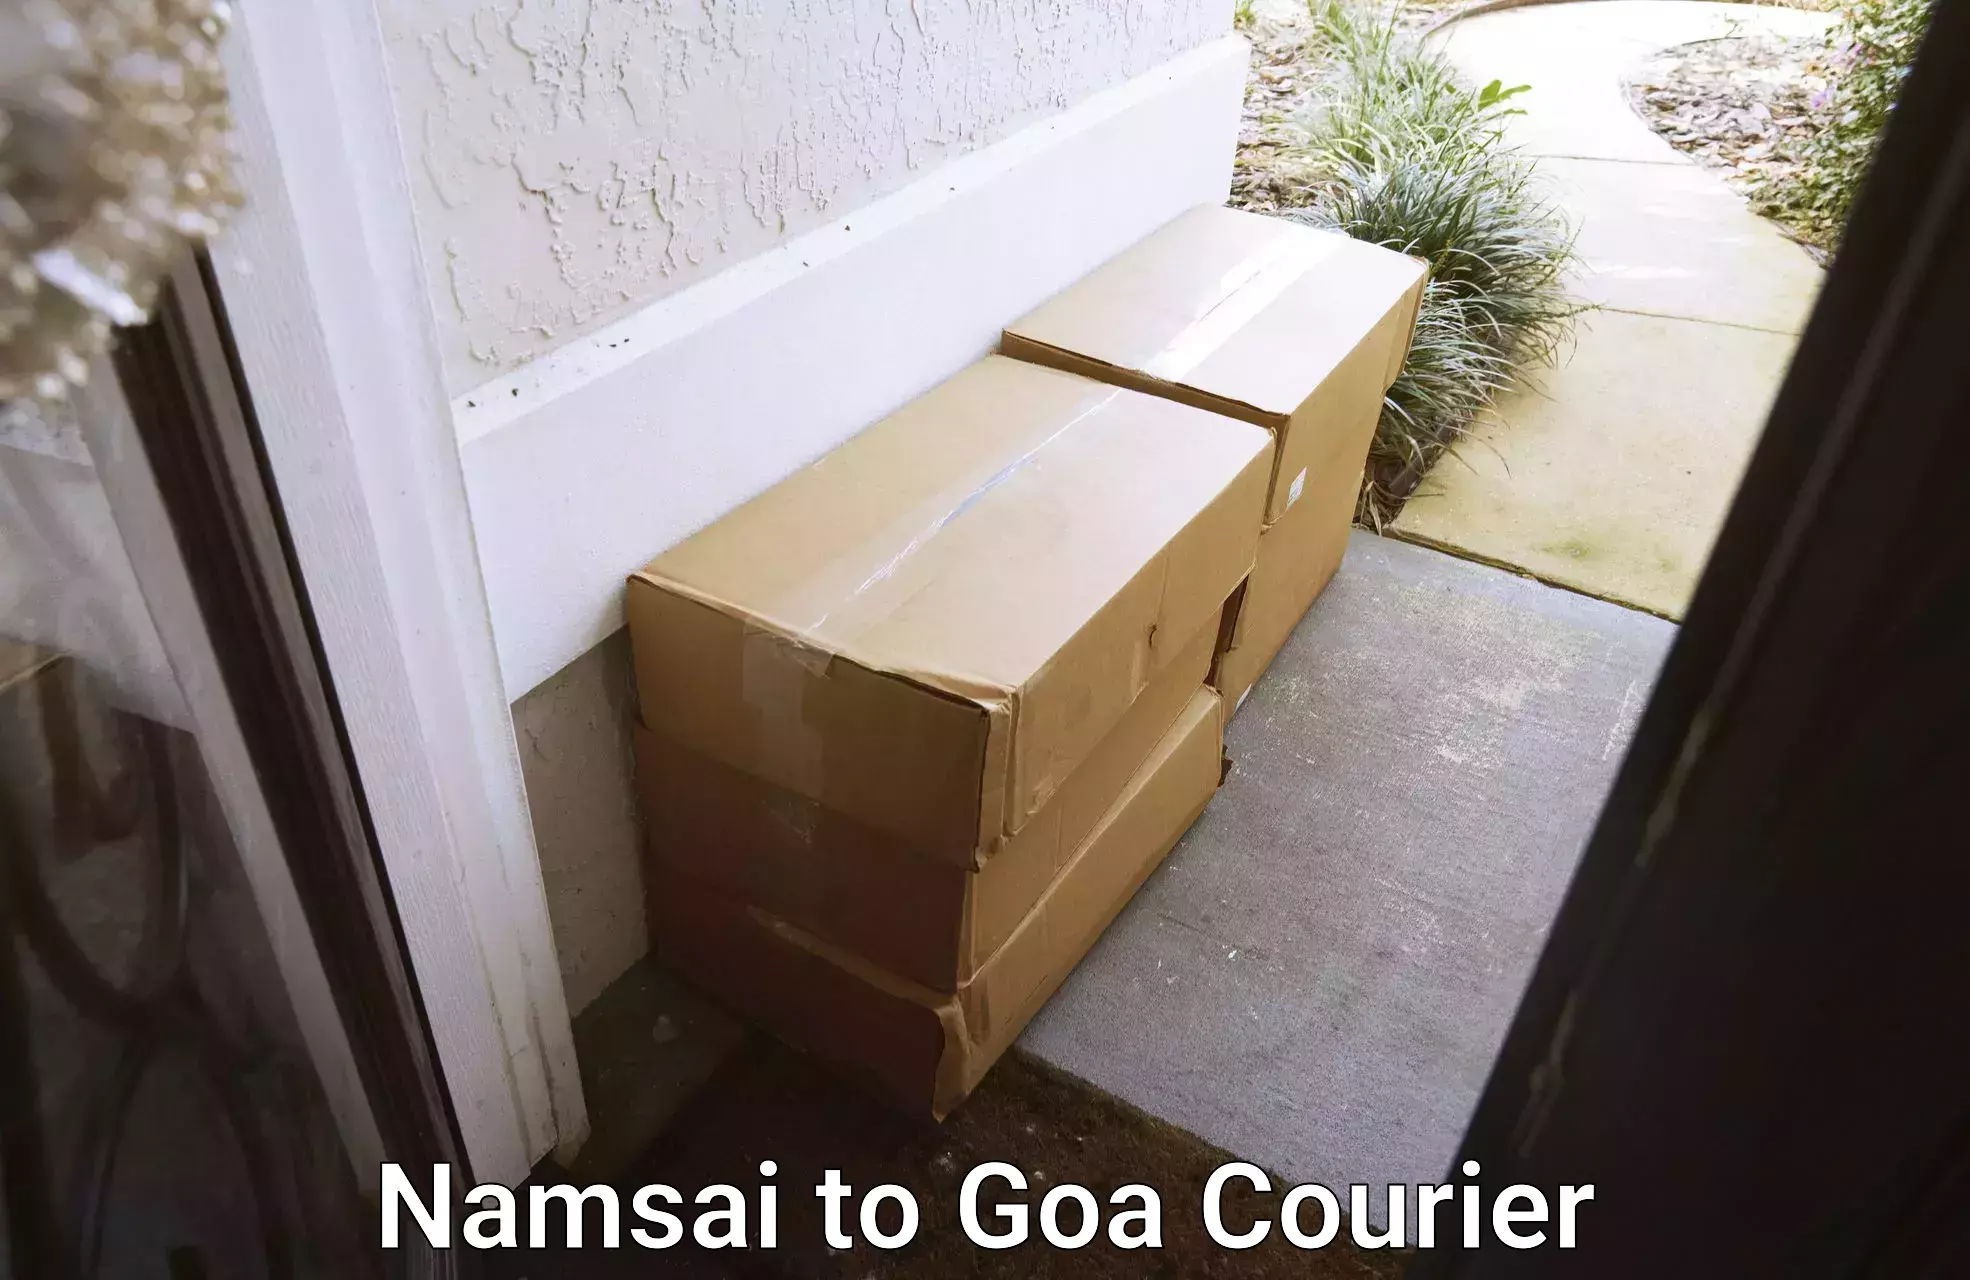 Next day courier Namsai to Vasco da Gama